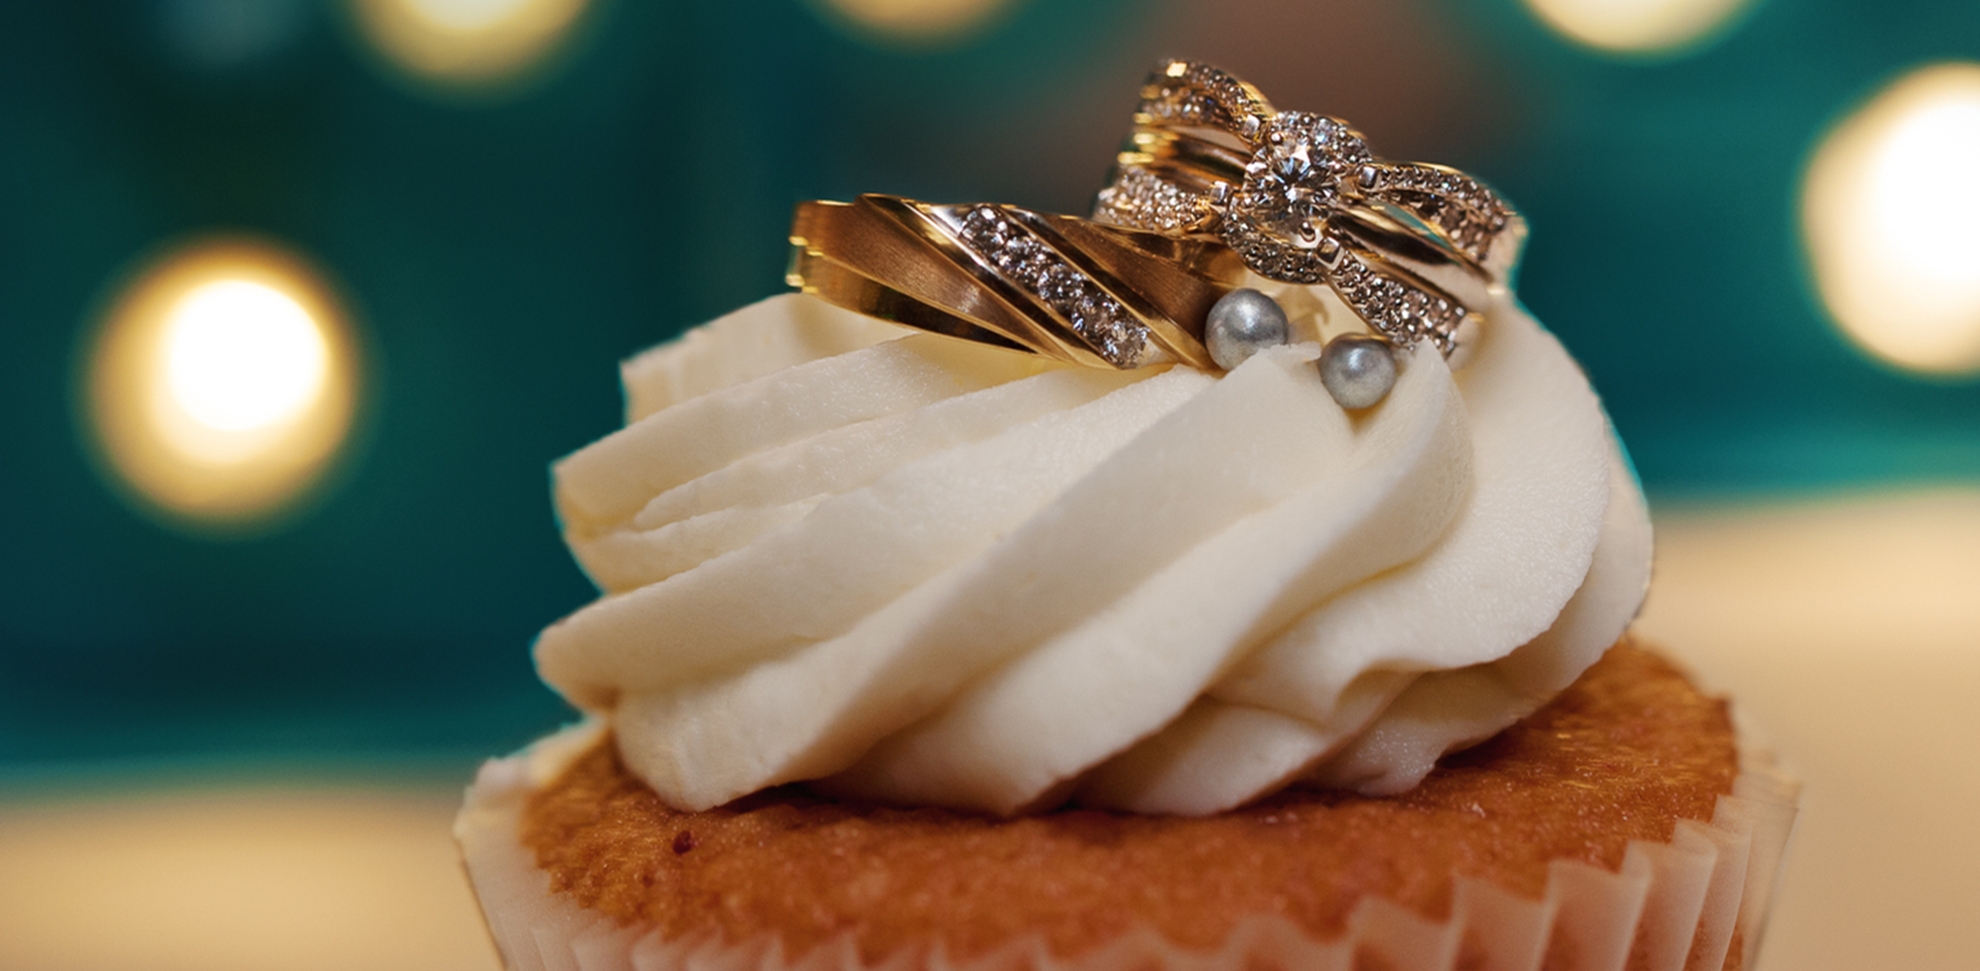 Cupcake wedding ring